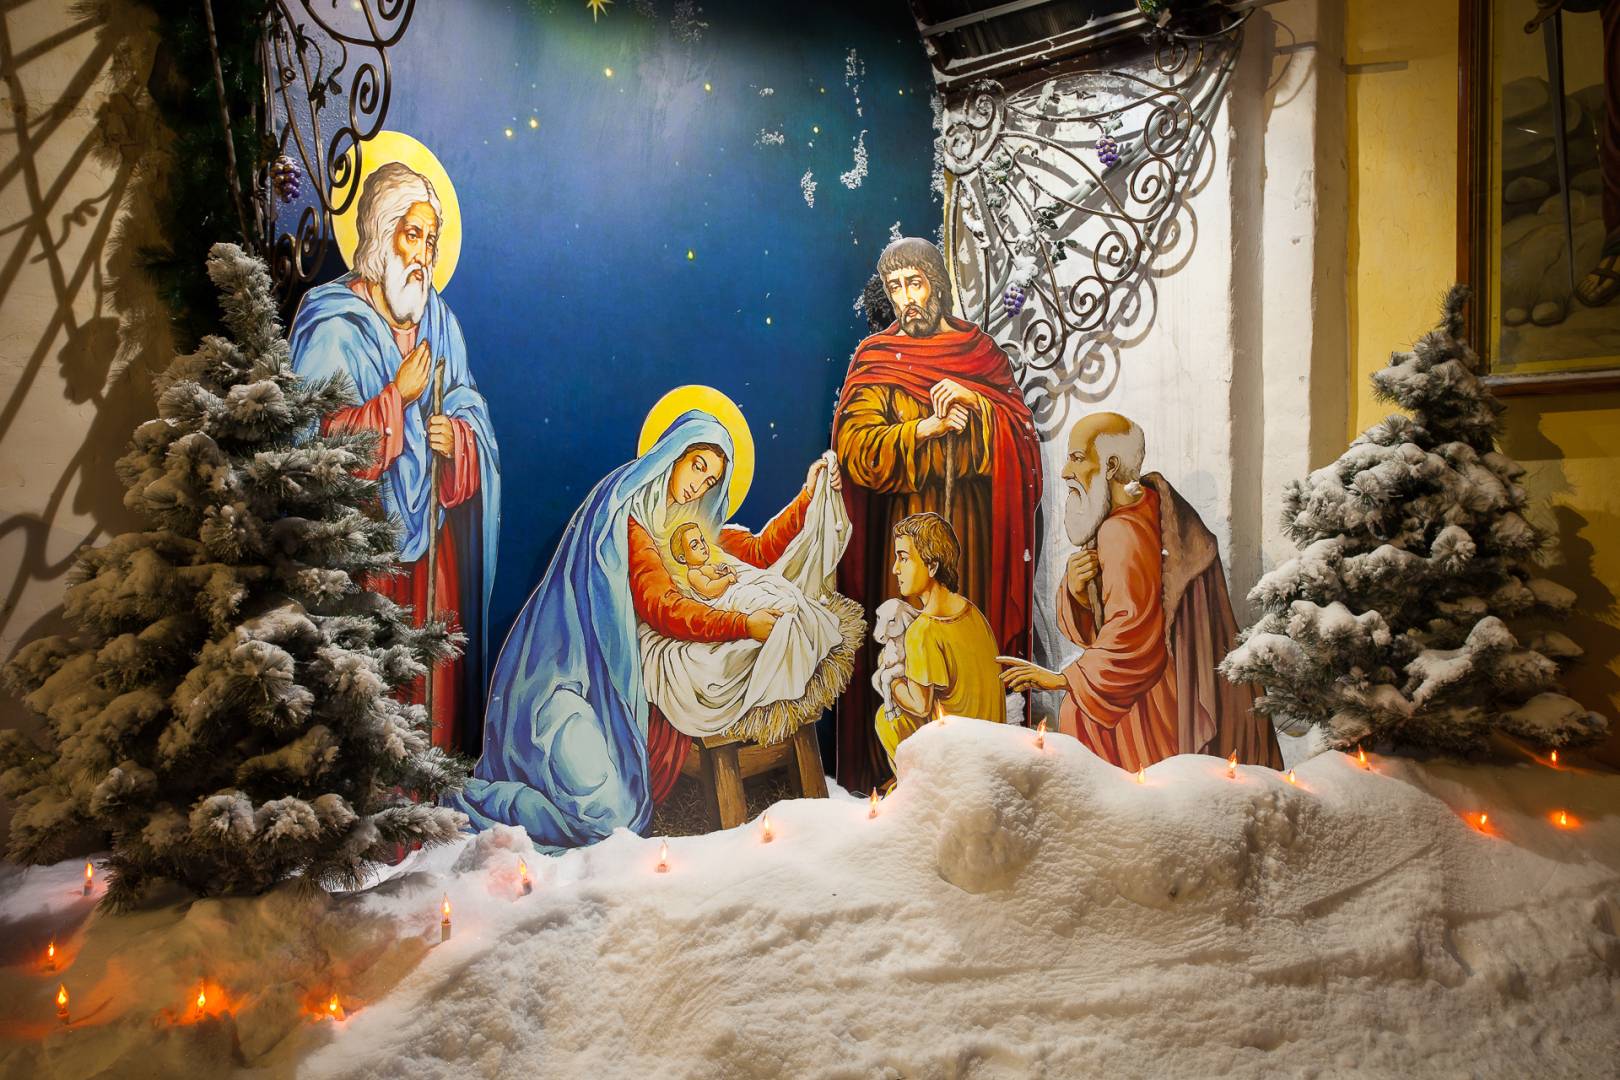 Дата рождества христова в 2023 году, иконы, поздравление, традиции в россии, история праздника